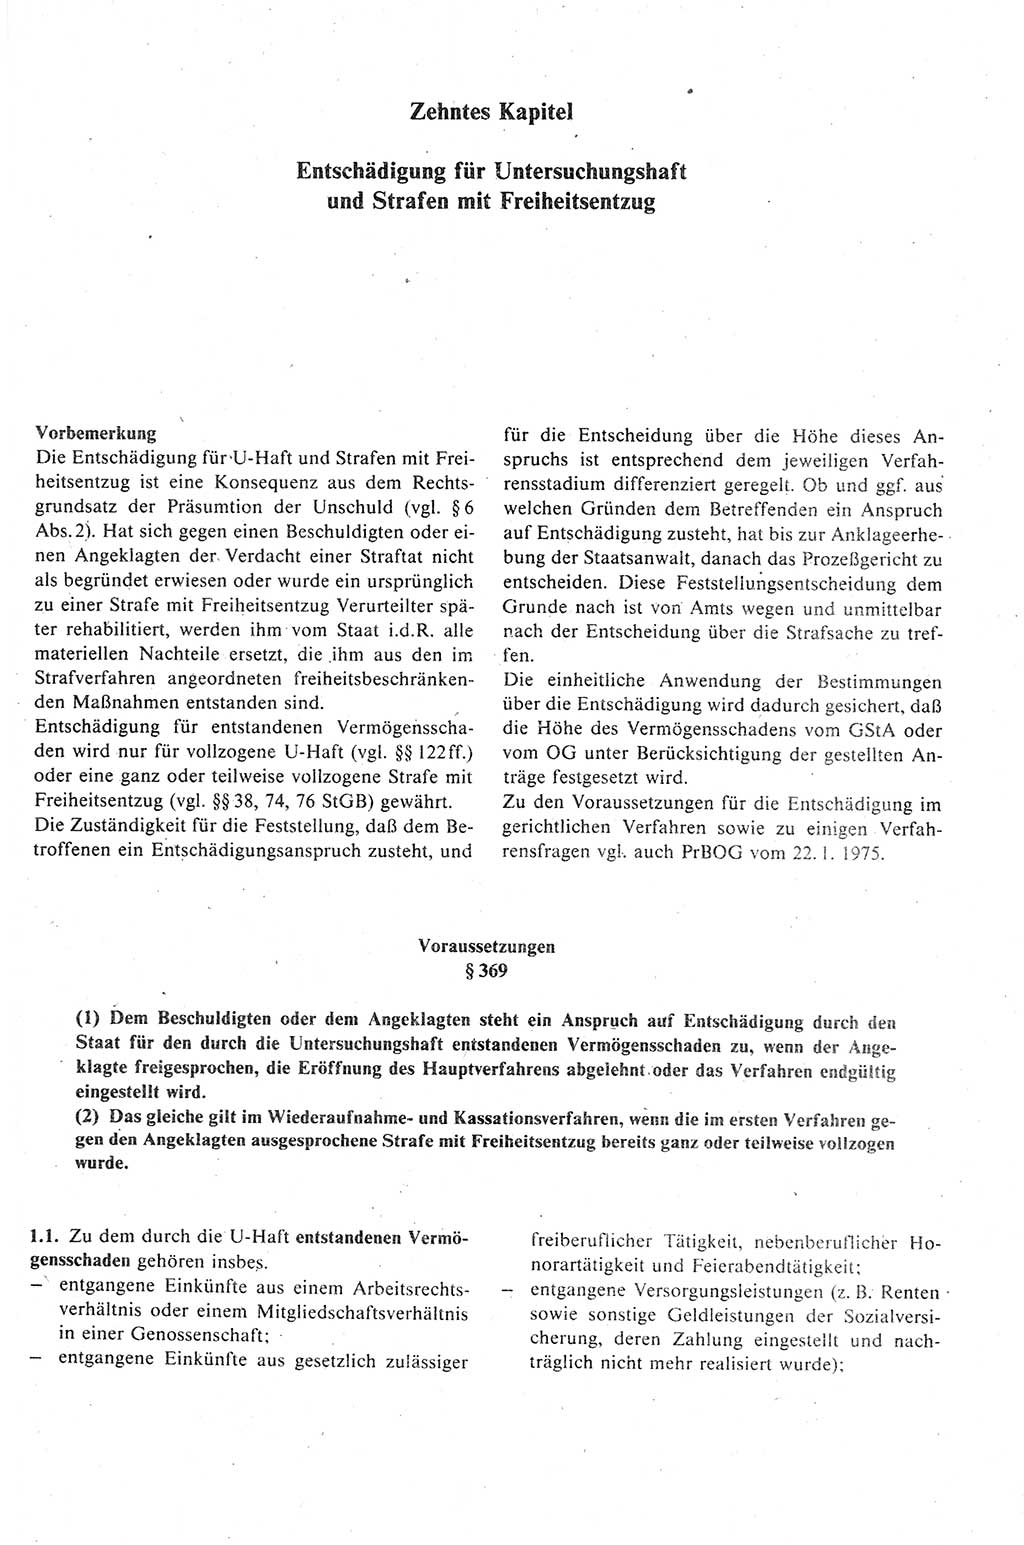 Strafprozeßrecht der DDR (Deutsche Demokratische Republik), Kommentar zur Strafprozeßordnung (StPO) 1989, Seite 431 (Strafprozeßr. DDR Komm. StPO 1989, S. 431)